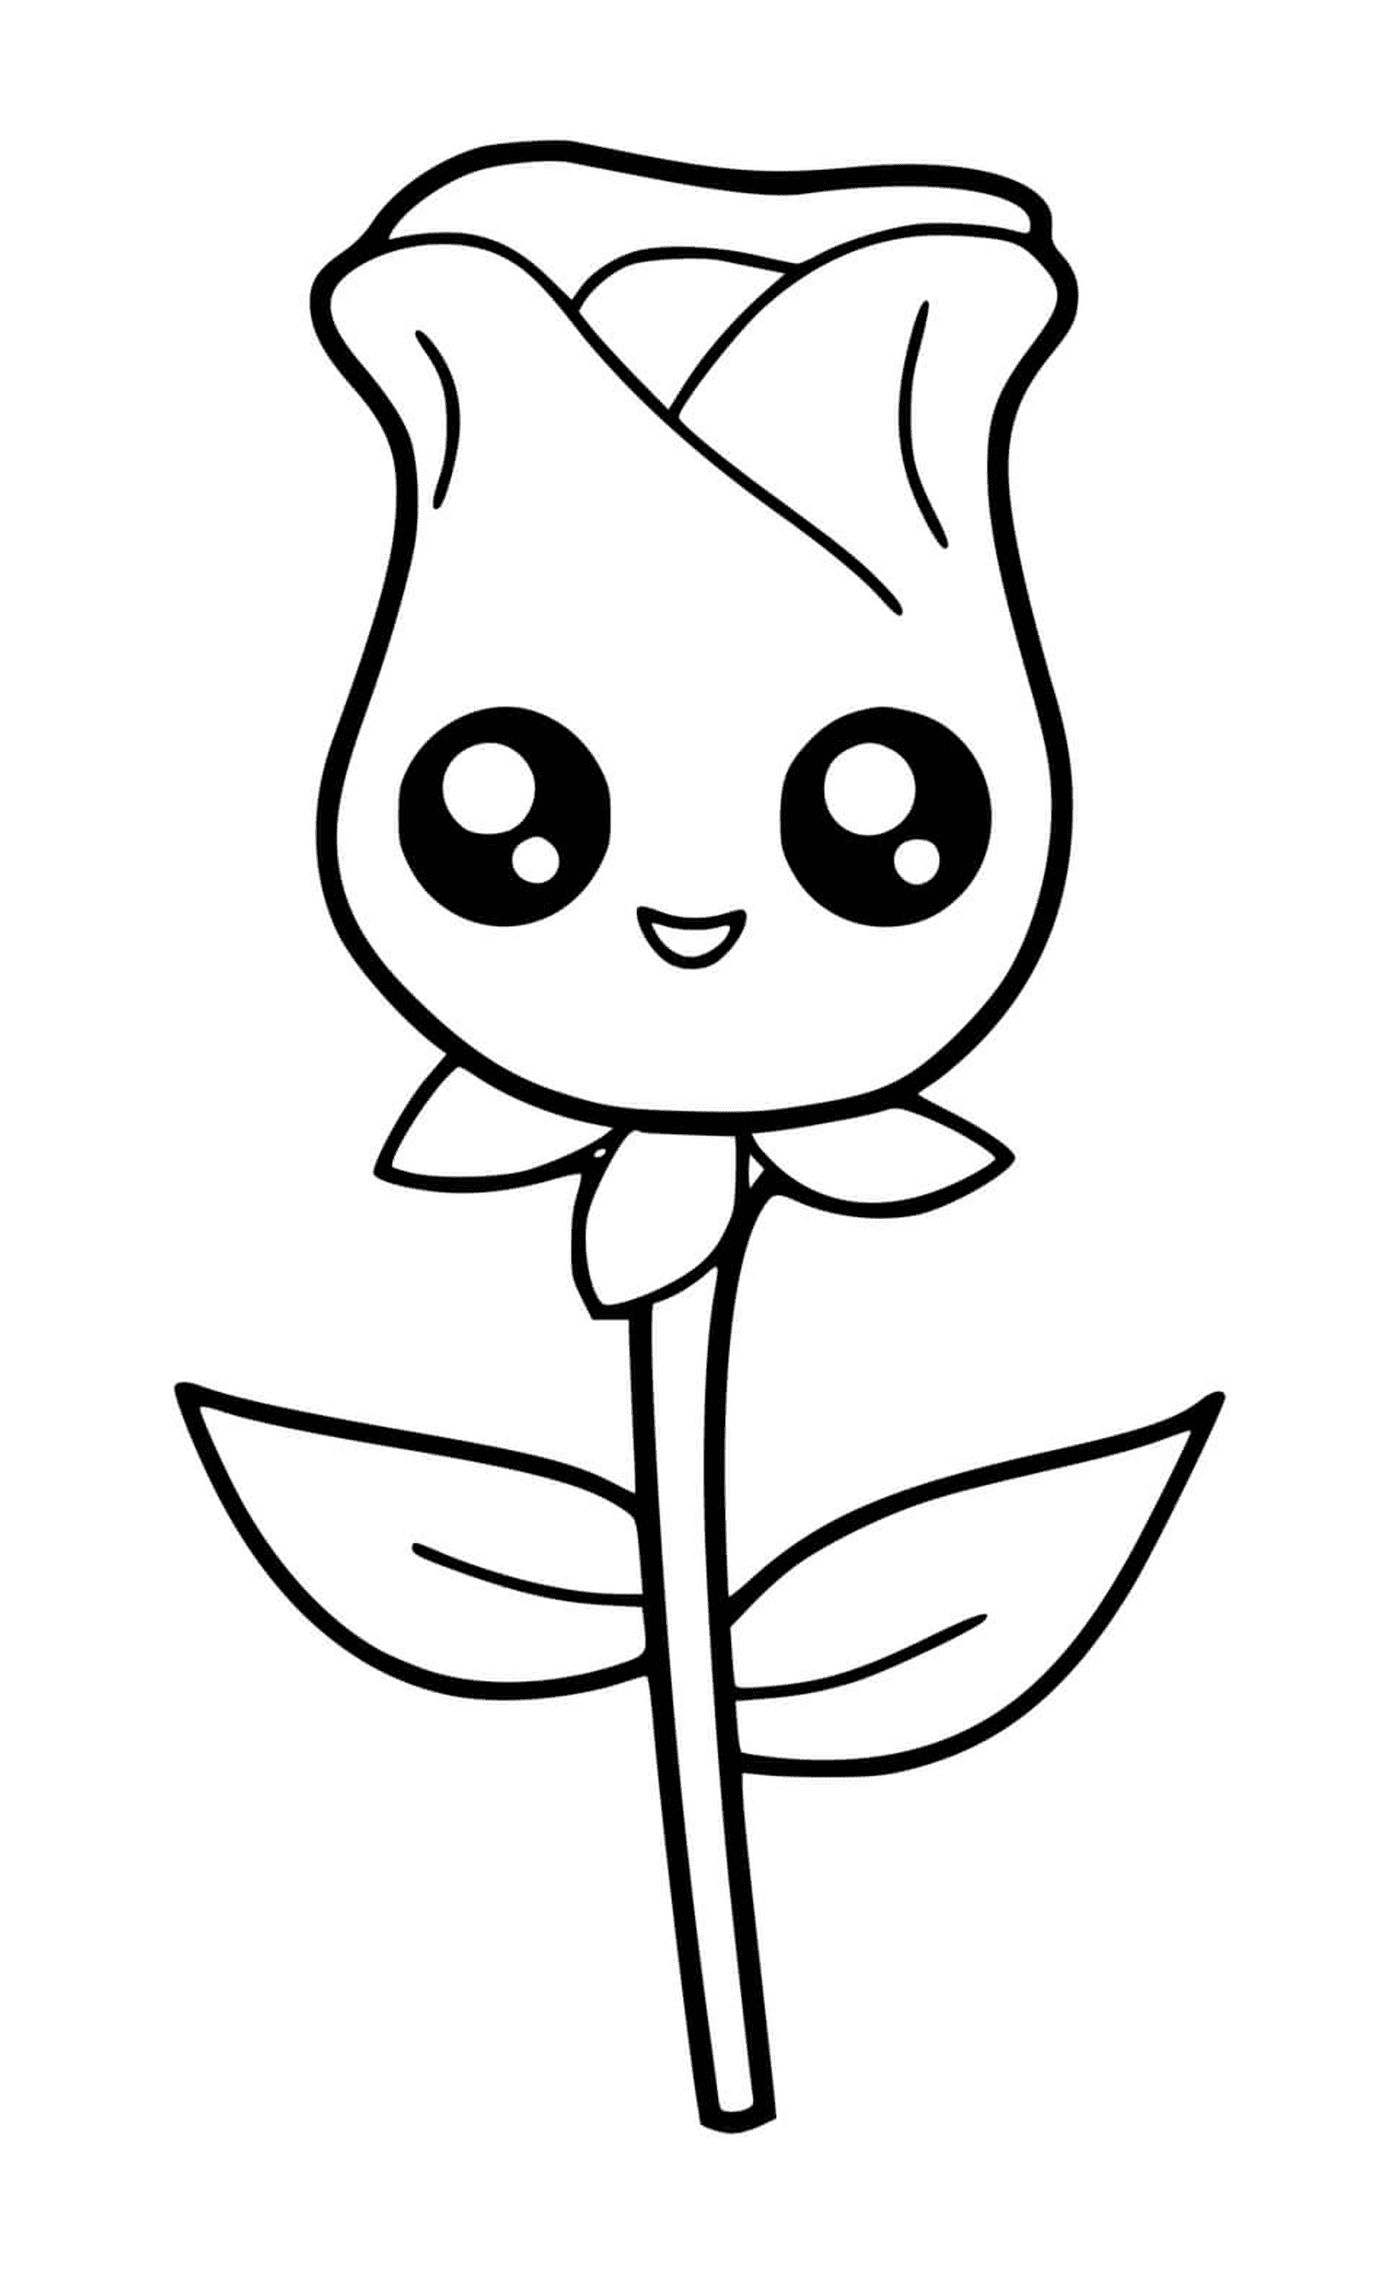  A flower 